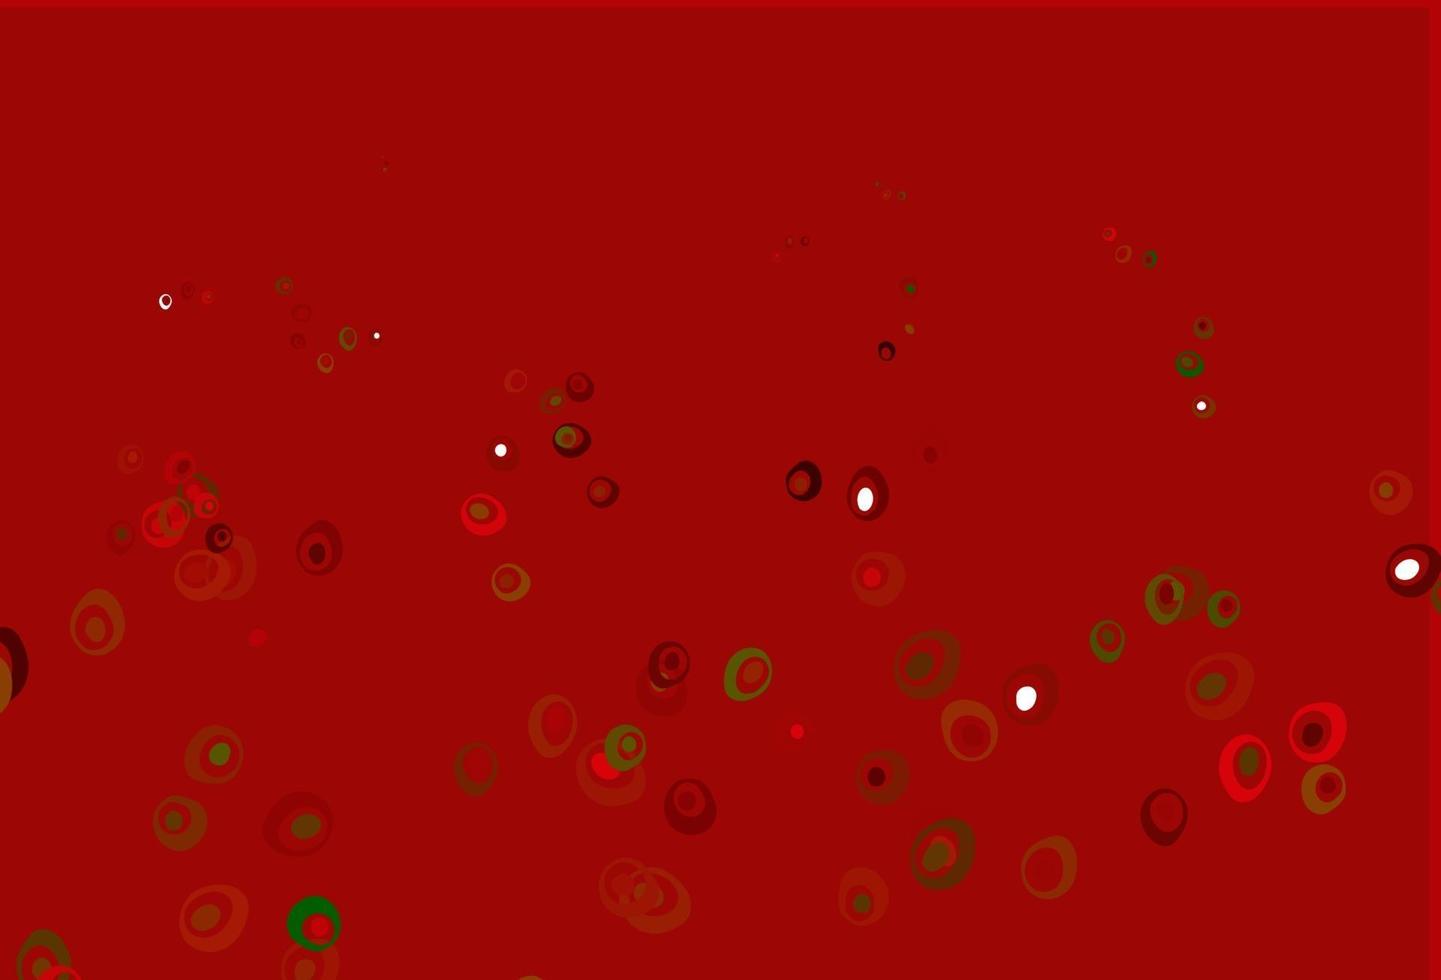 sfondo vettoriale verde chiaro, rosso con punti.